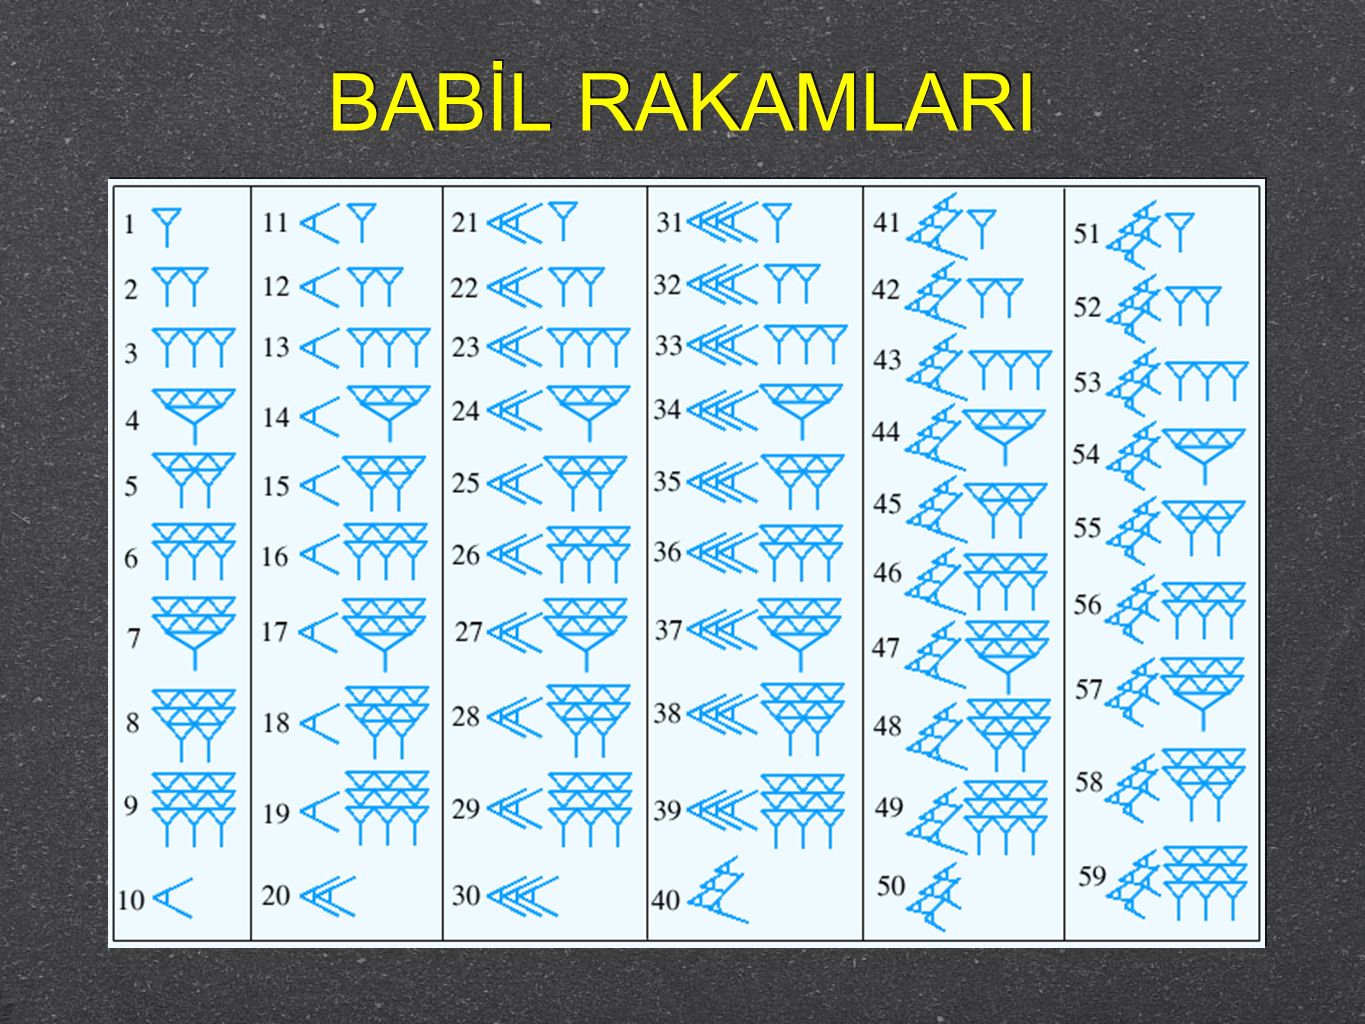 вавилонская система счисления картинки